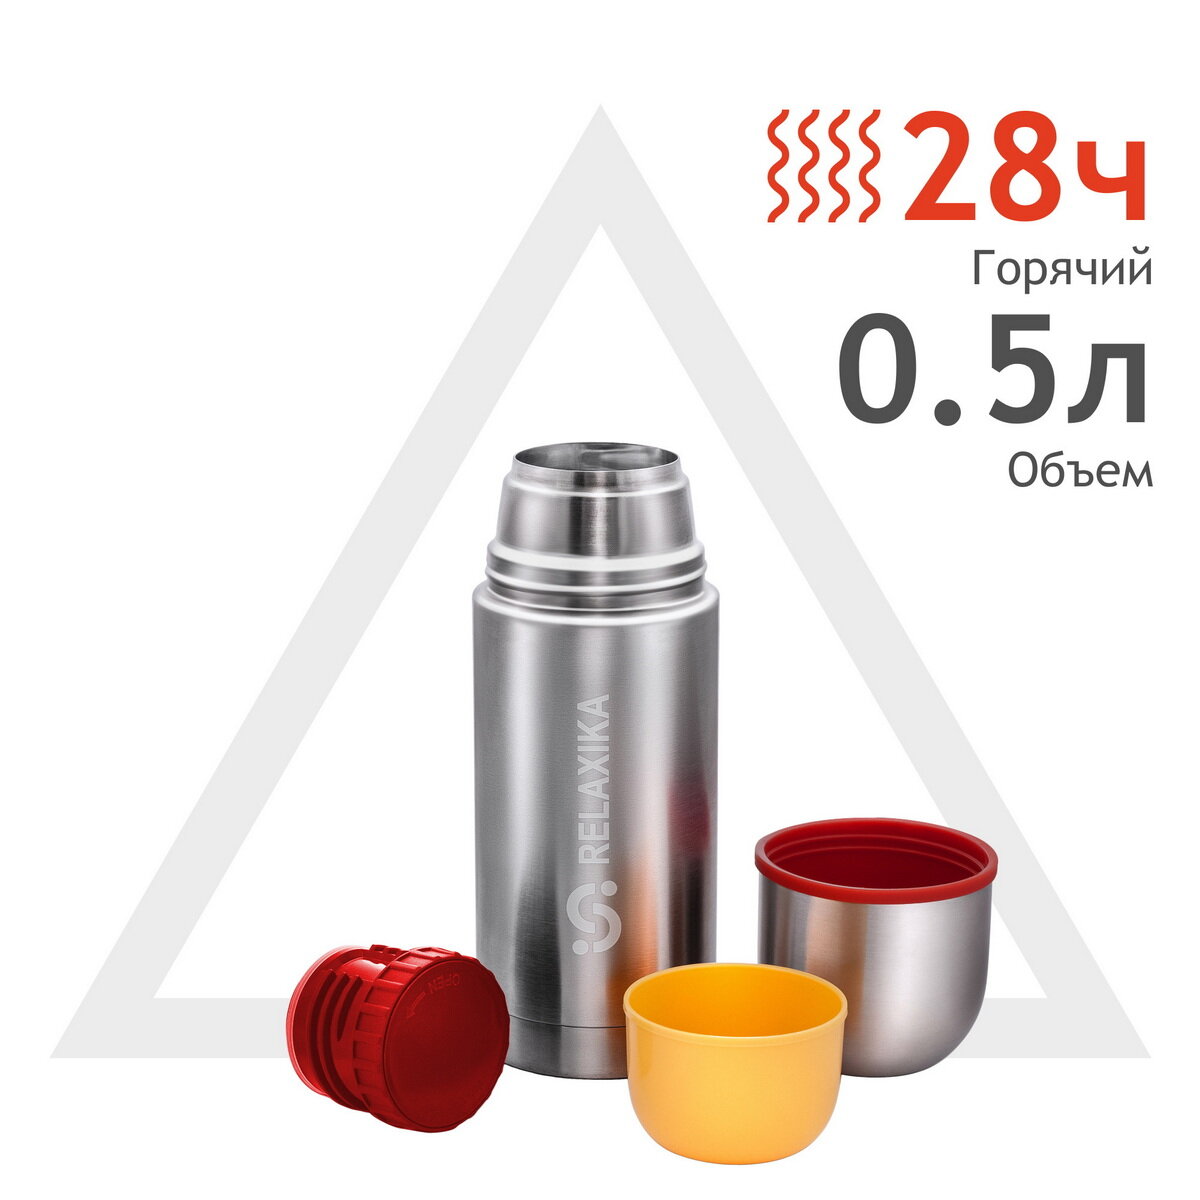 Термос Relaxika 102 (0,5 литра), 2 чашки, стальной